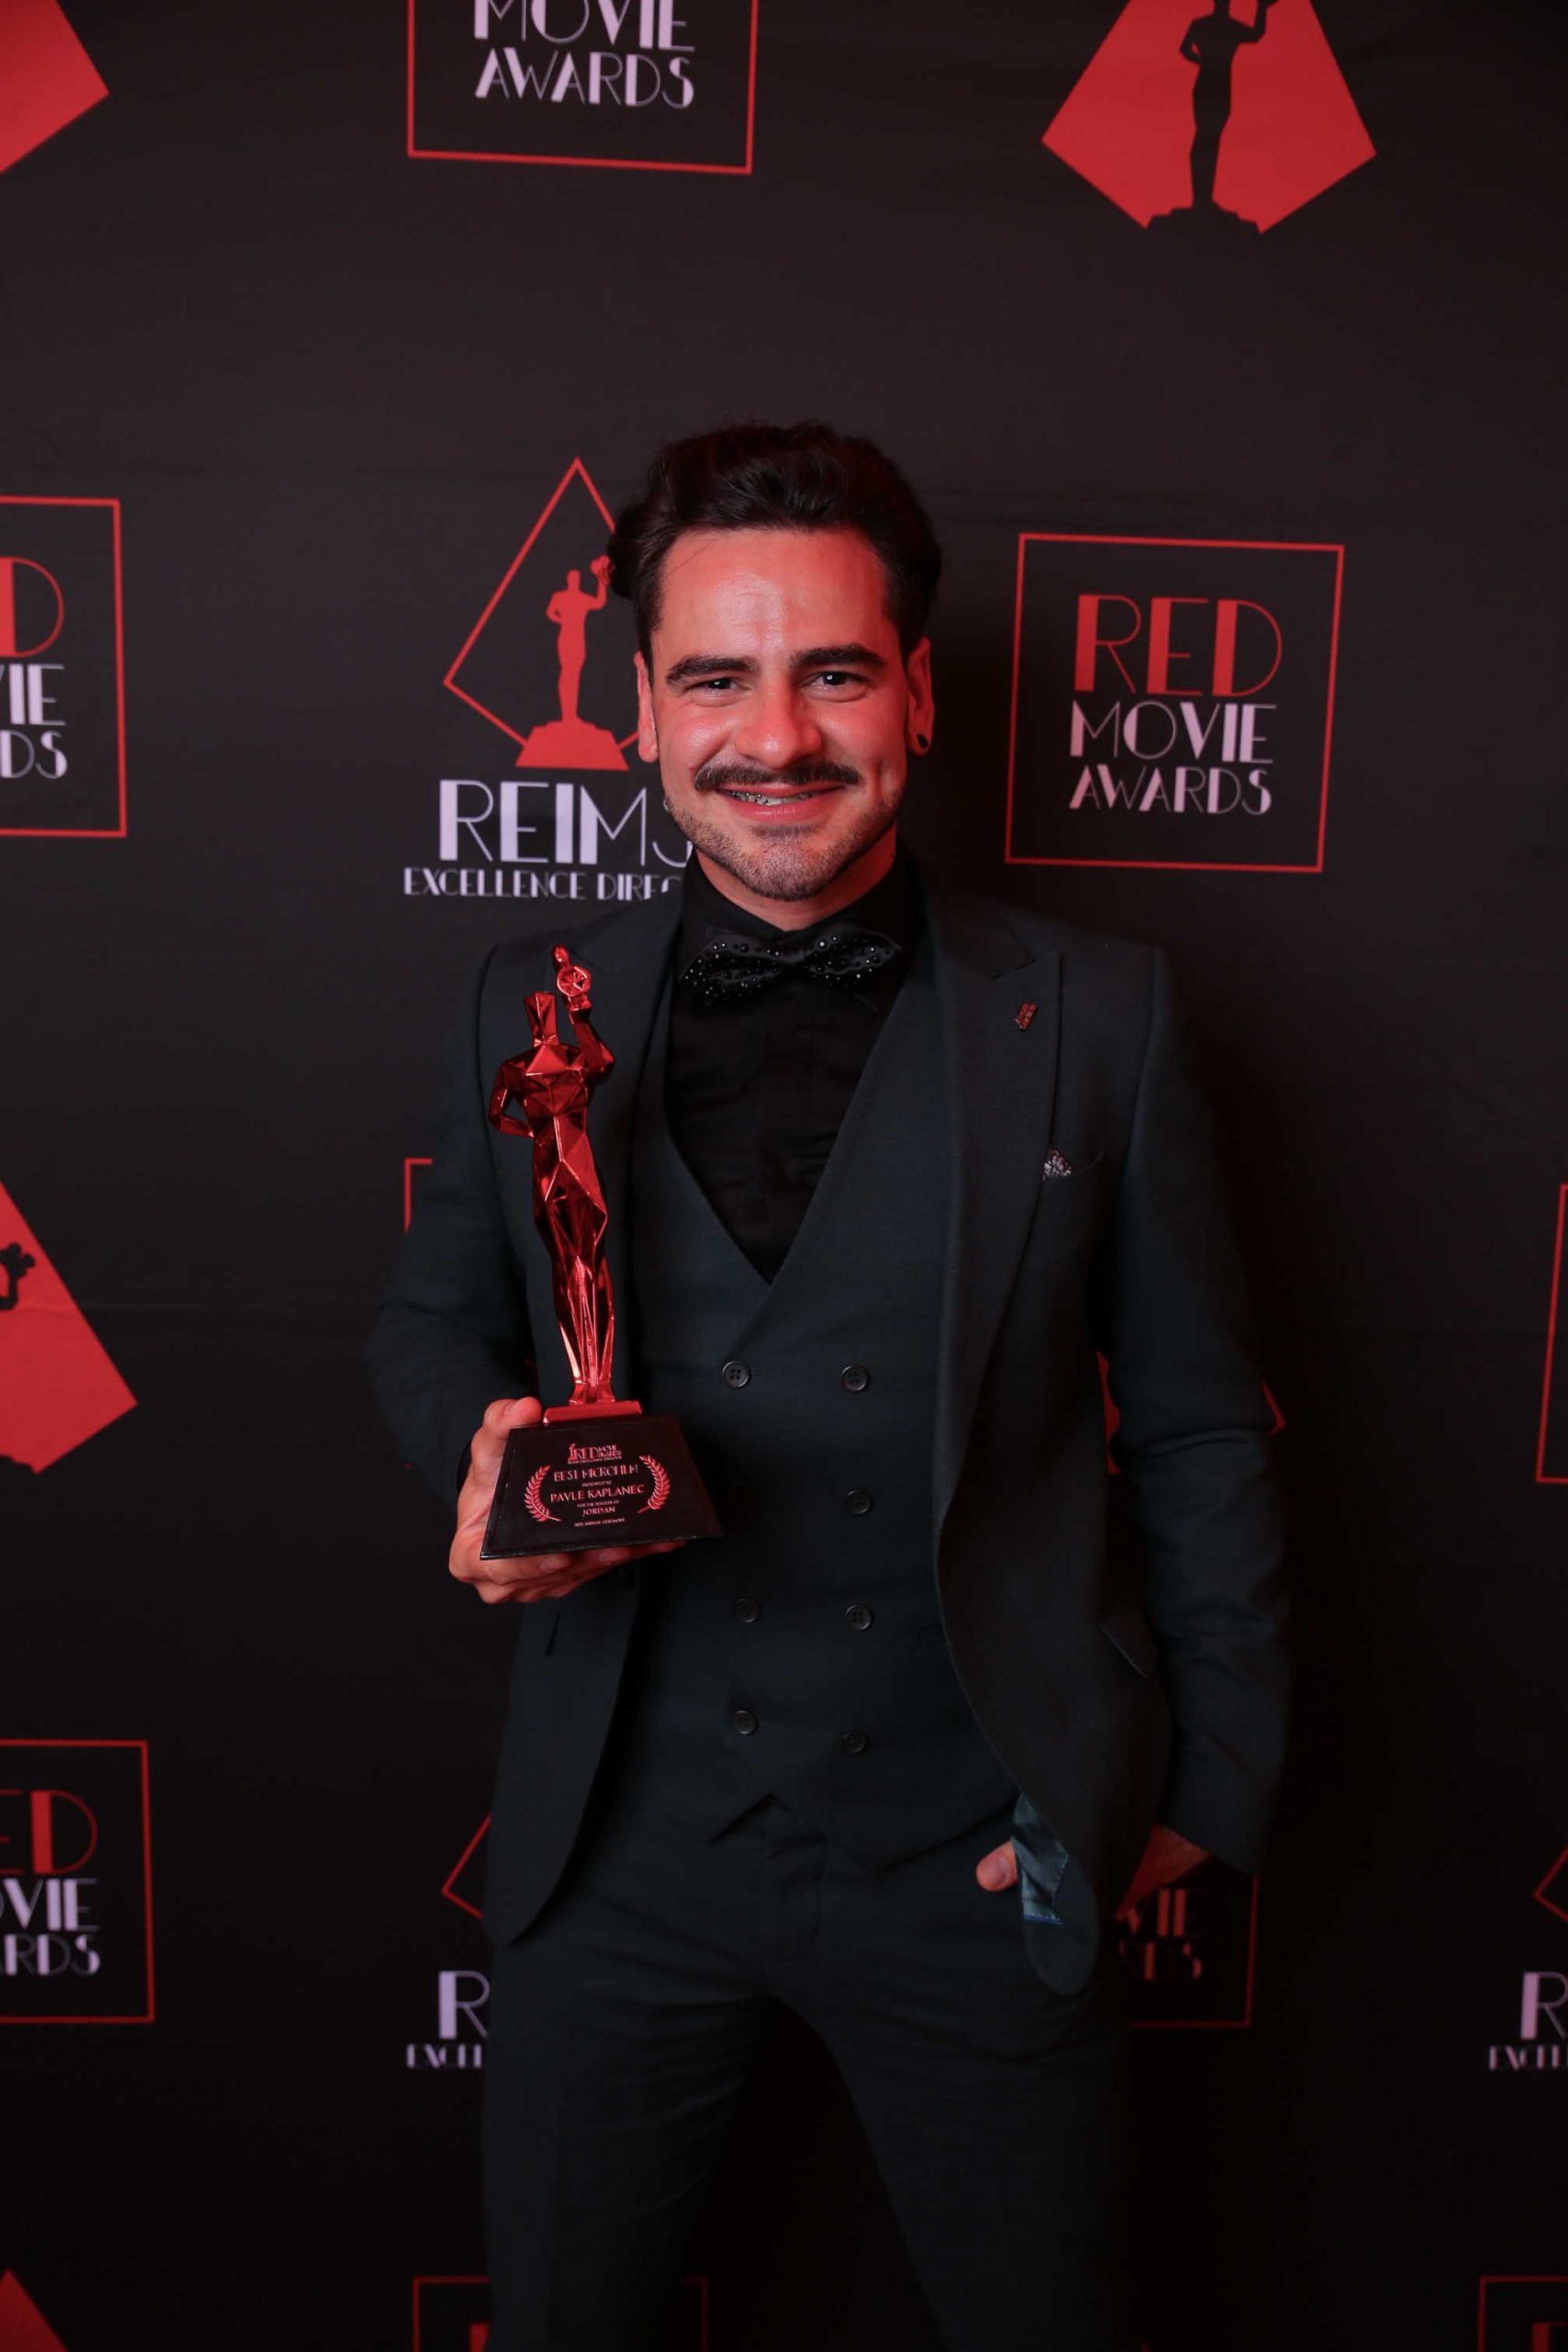 Pavle Kaplanec: "Ponosan sam na nagradu za film "Jordan" koji su ocenjivali svetski priznati glumci!"